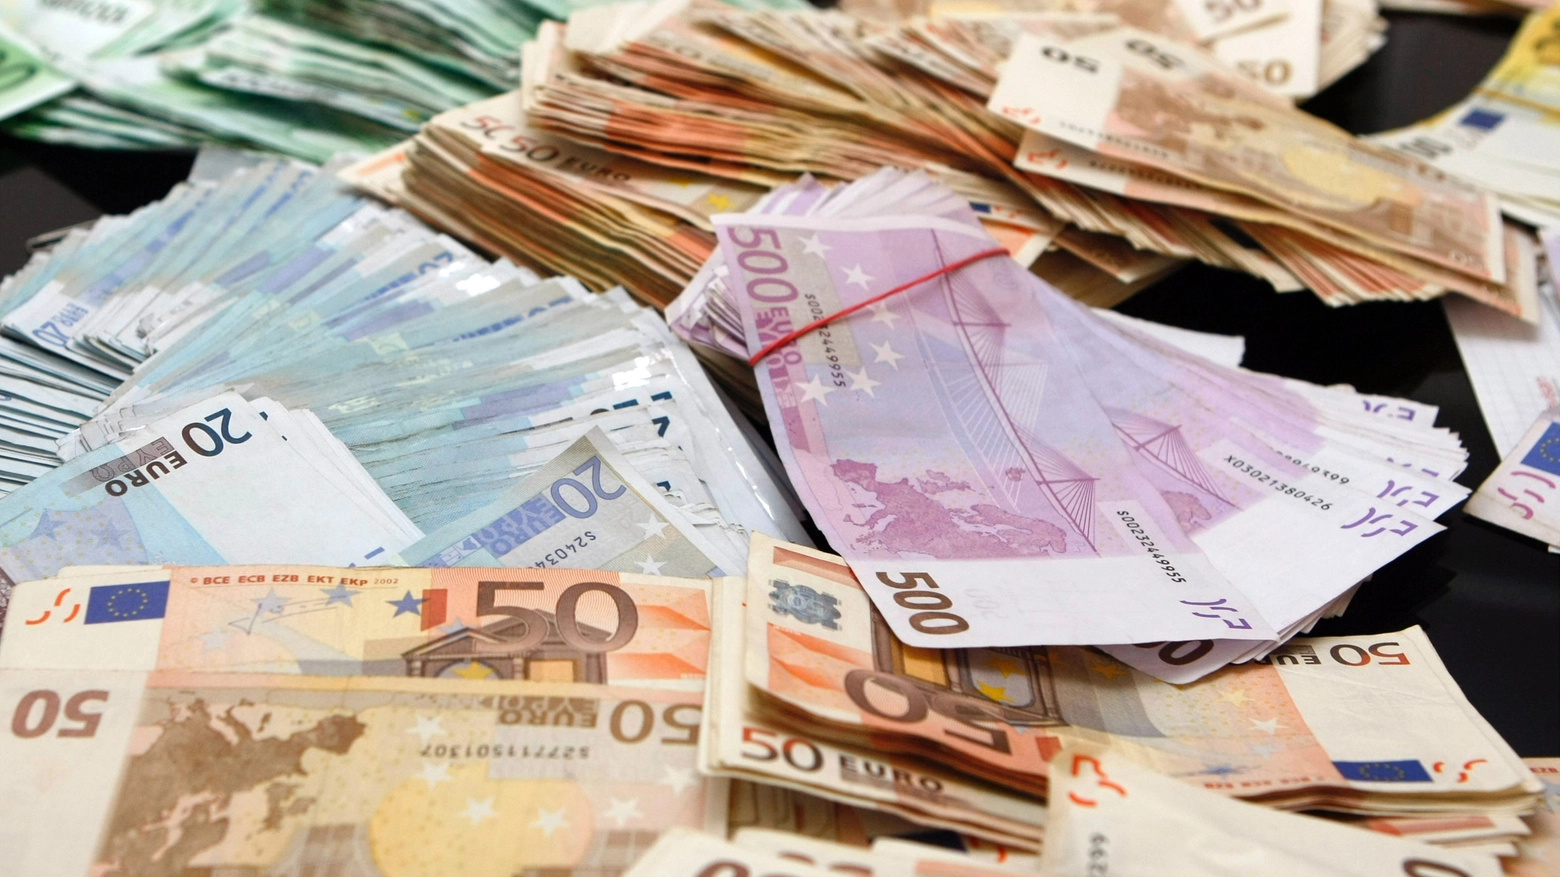 L'uomo arrestato aveva con sé 50mila euro in banconote di diverso taglio